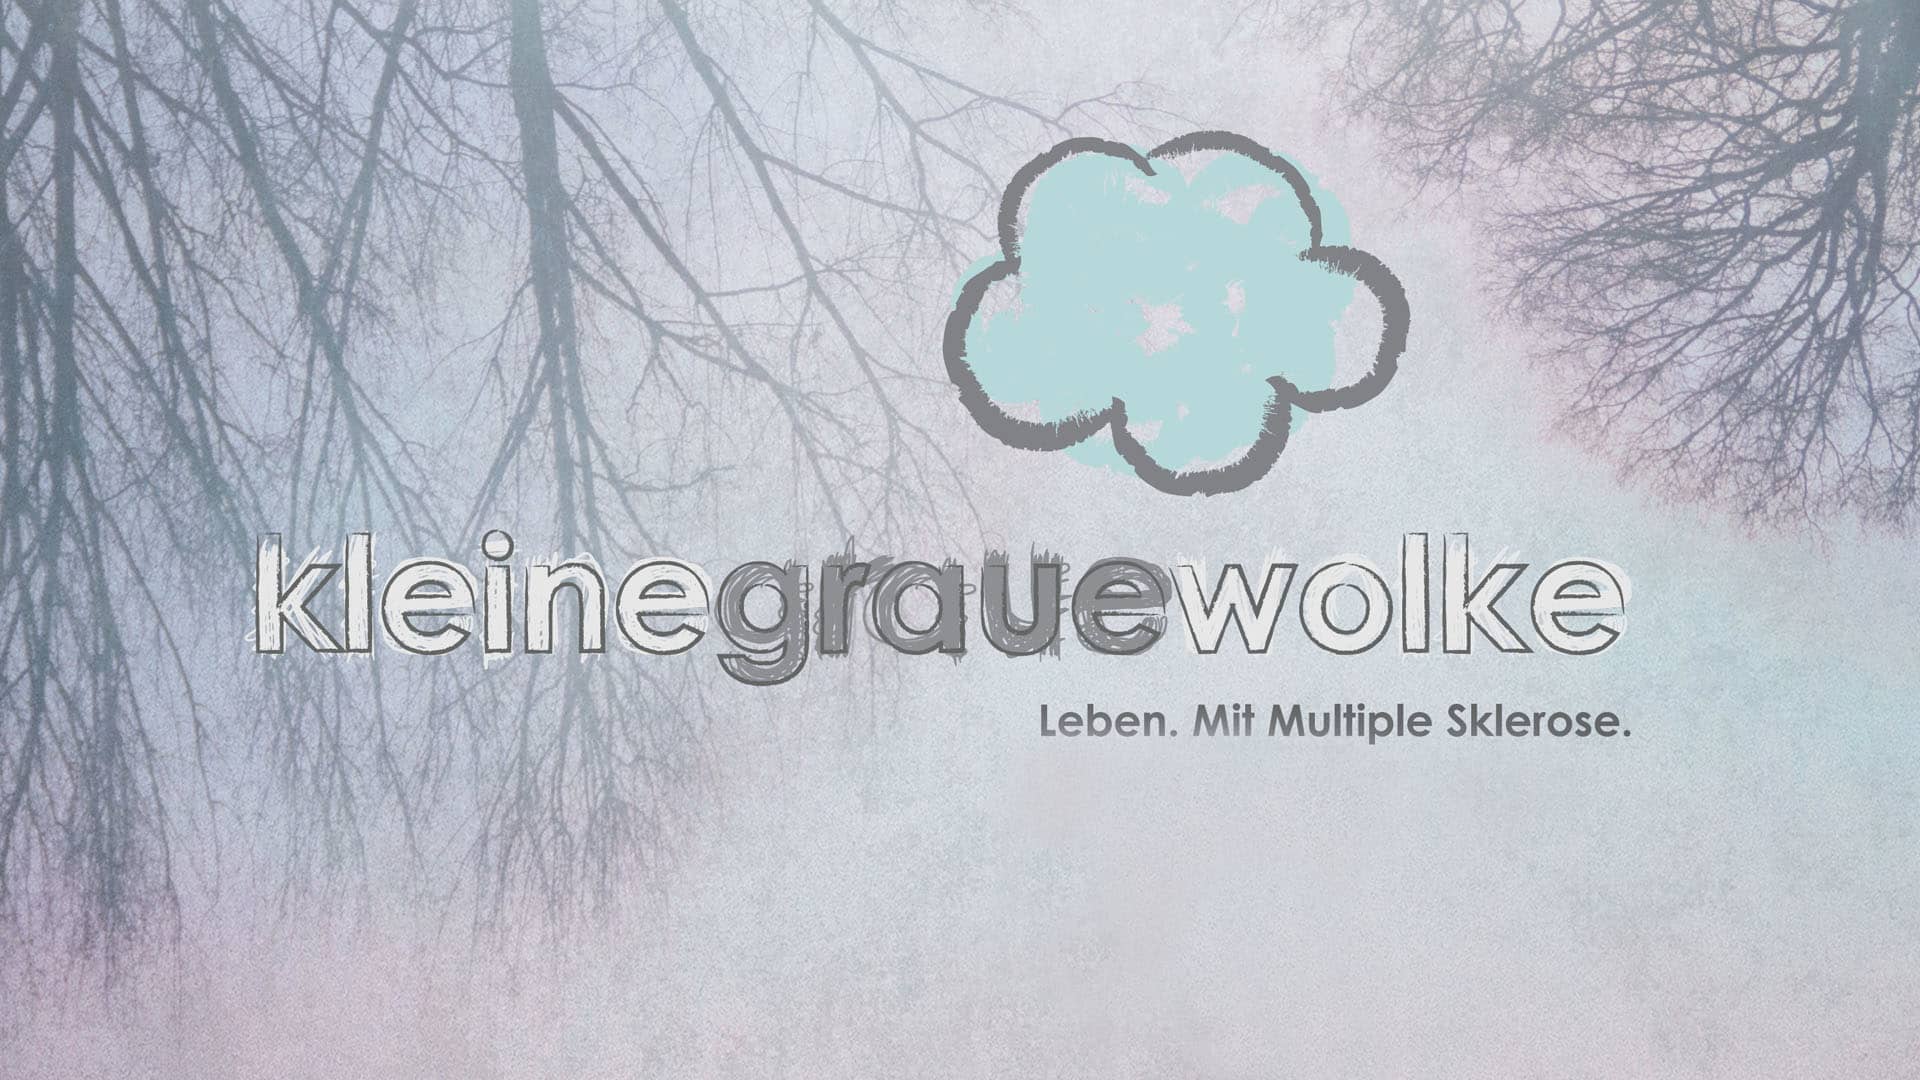 Images of Kleine Graue Wolke | 1920x1080